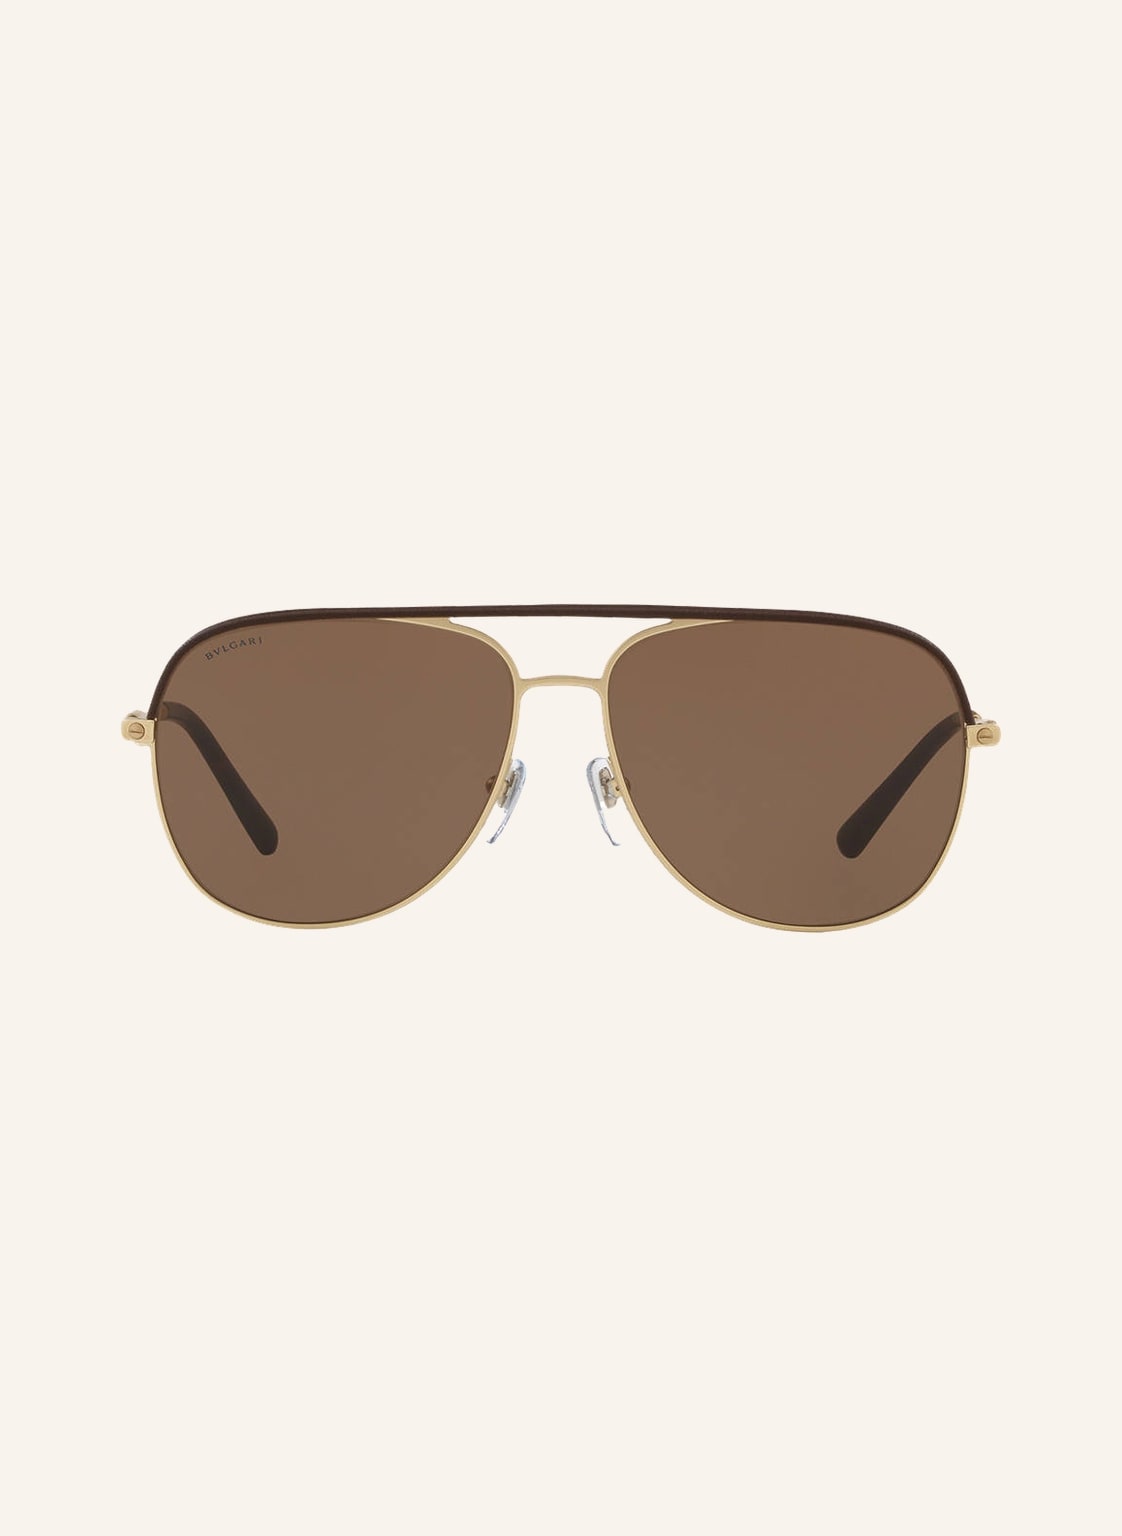 BVLGARI Sunglasses Sonnenbrille BV5047Q in 202273 - matt gold/ braun einer weiteren Farbe